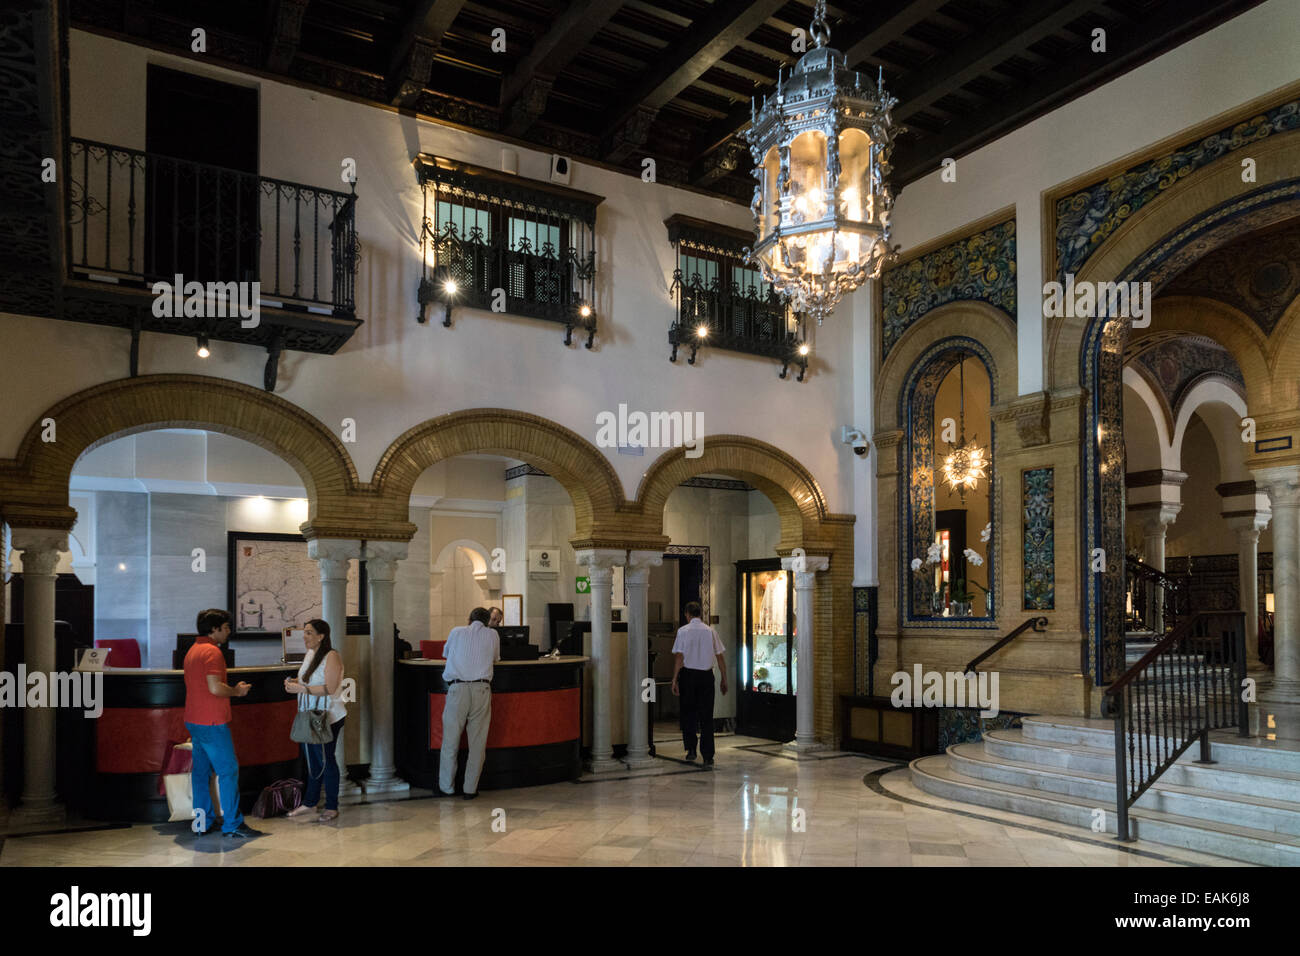 Lobby, Hotel Alfonso XIII, Seville Stock Photo